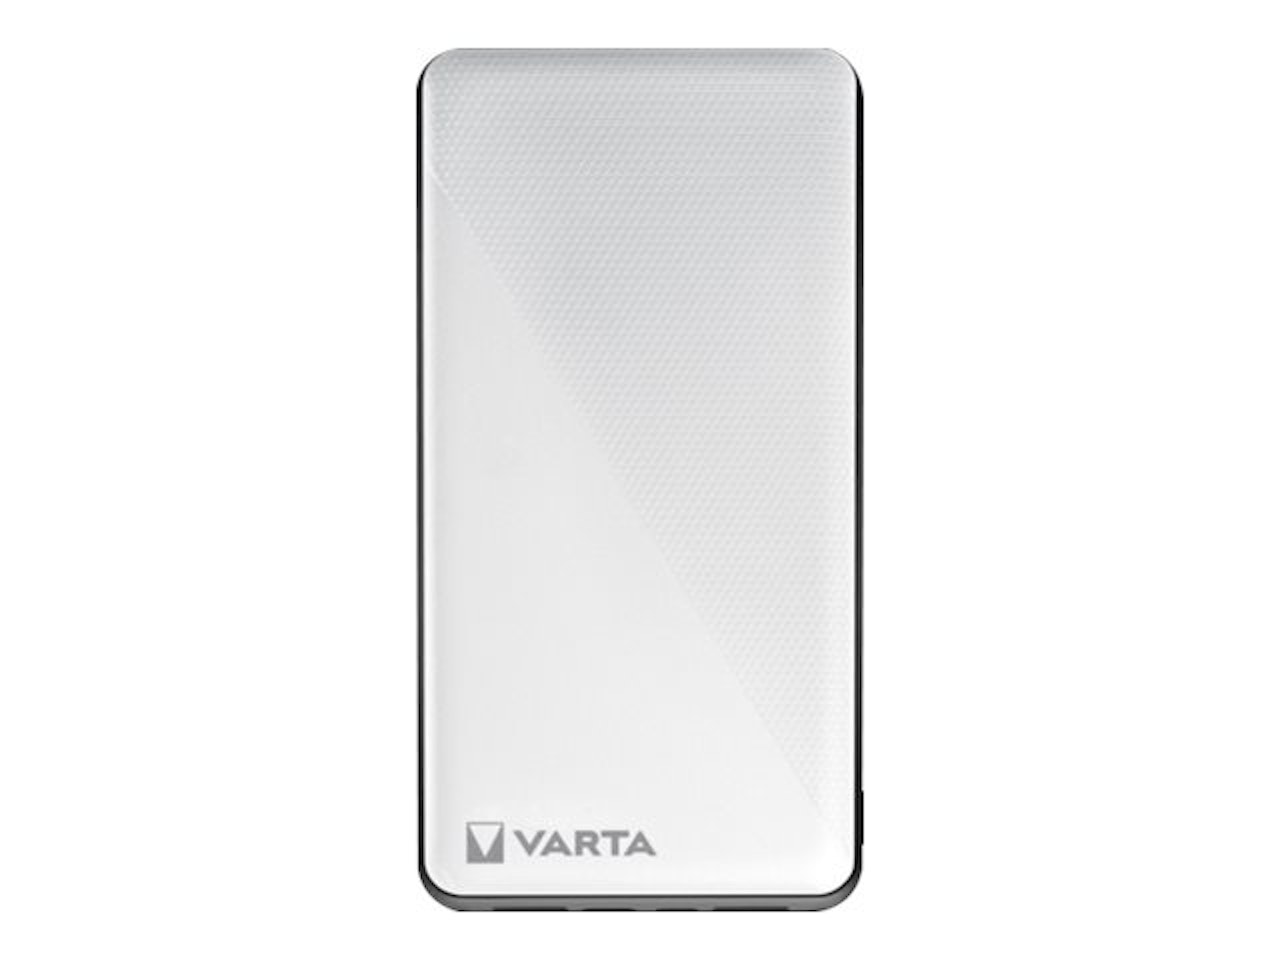 Varta Energy - Powerbank - 20000 mAh - 74 Wh - 15 Watt